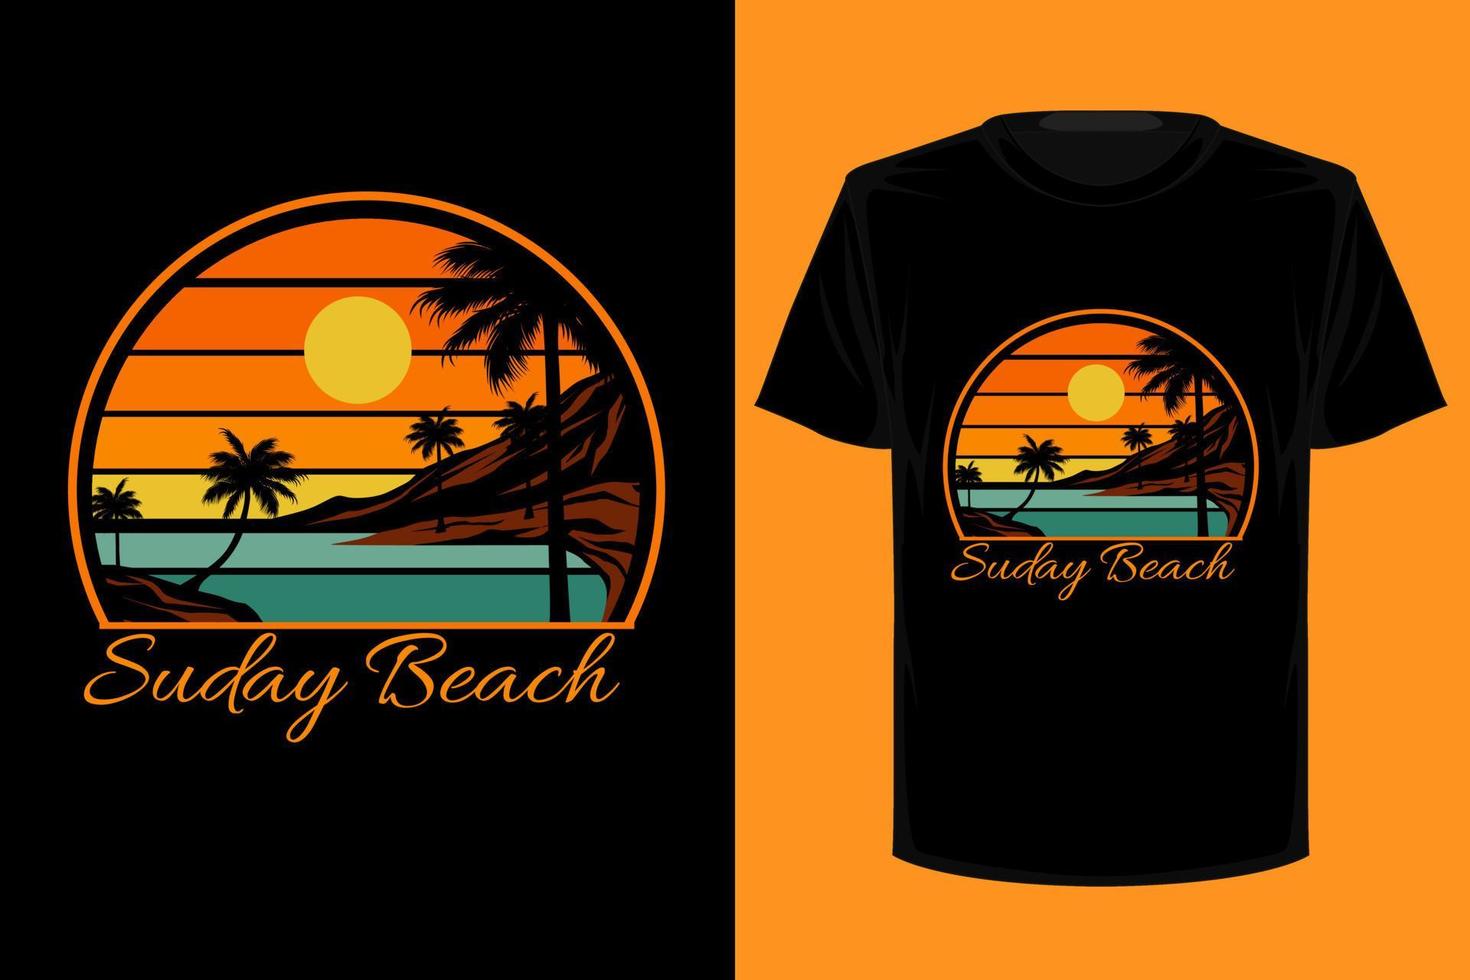 diseño de camiseta vintage retro de Sunday Beach vector